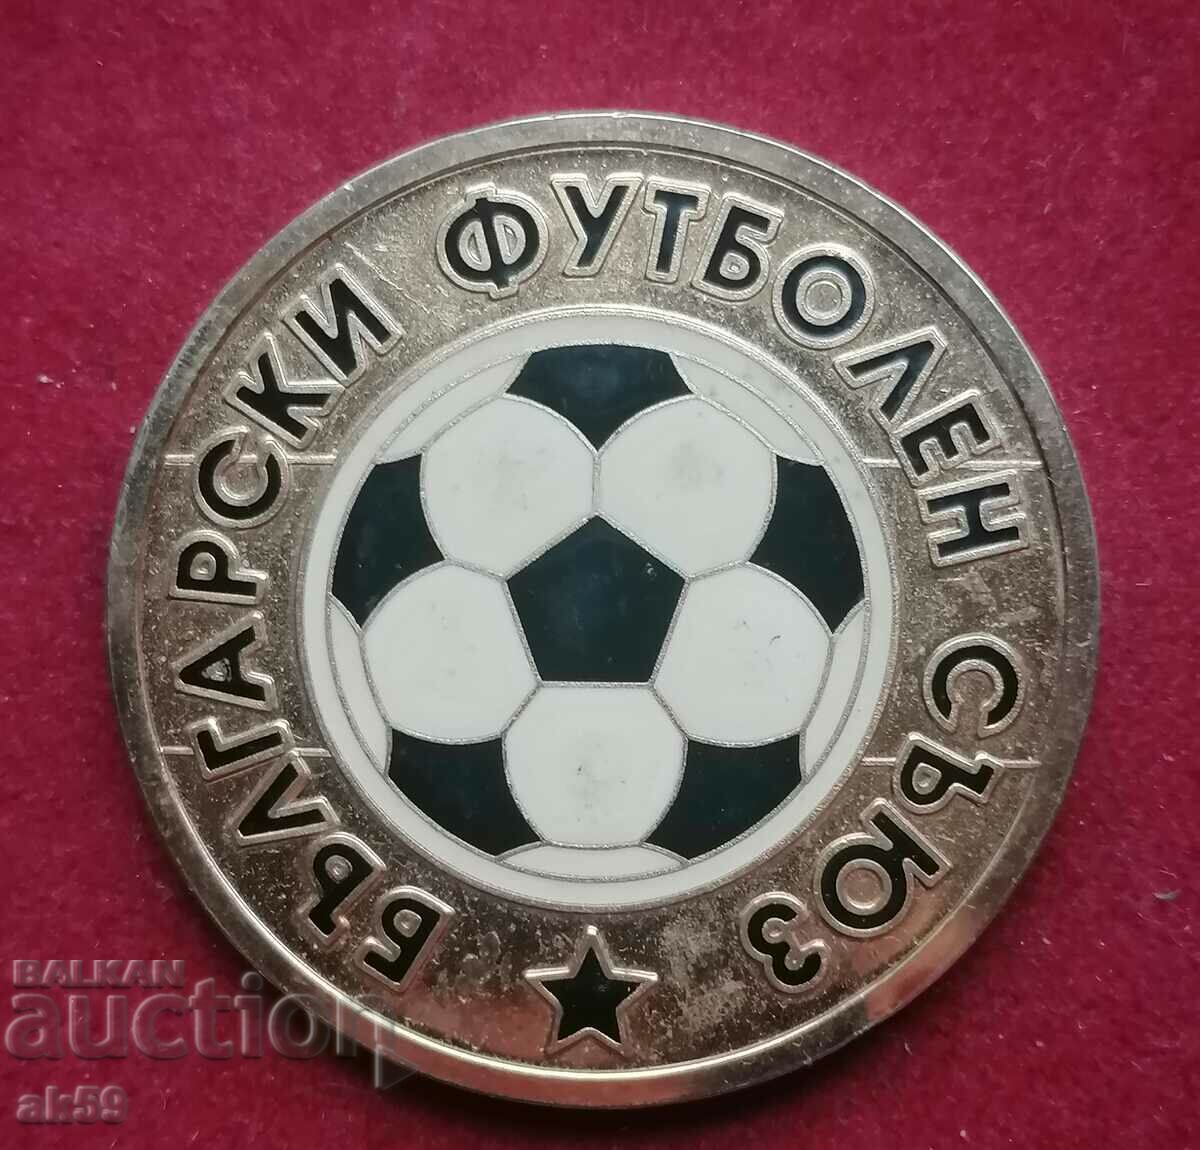 placa de fotbal "Euro Portugalia 2004"